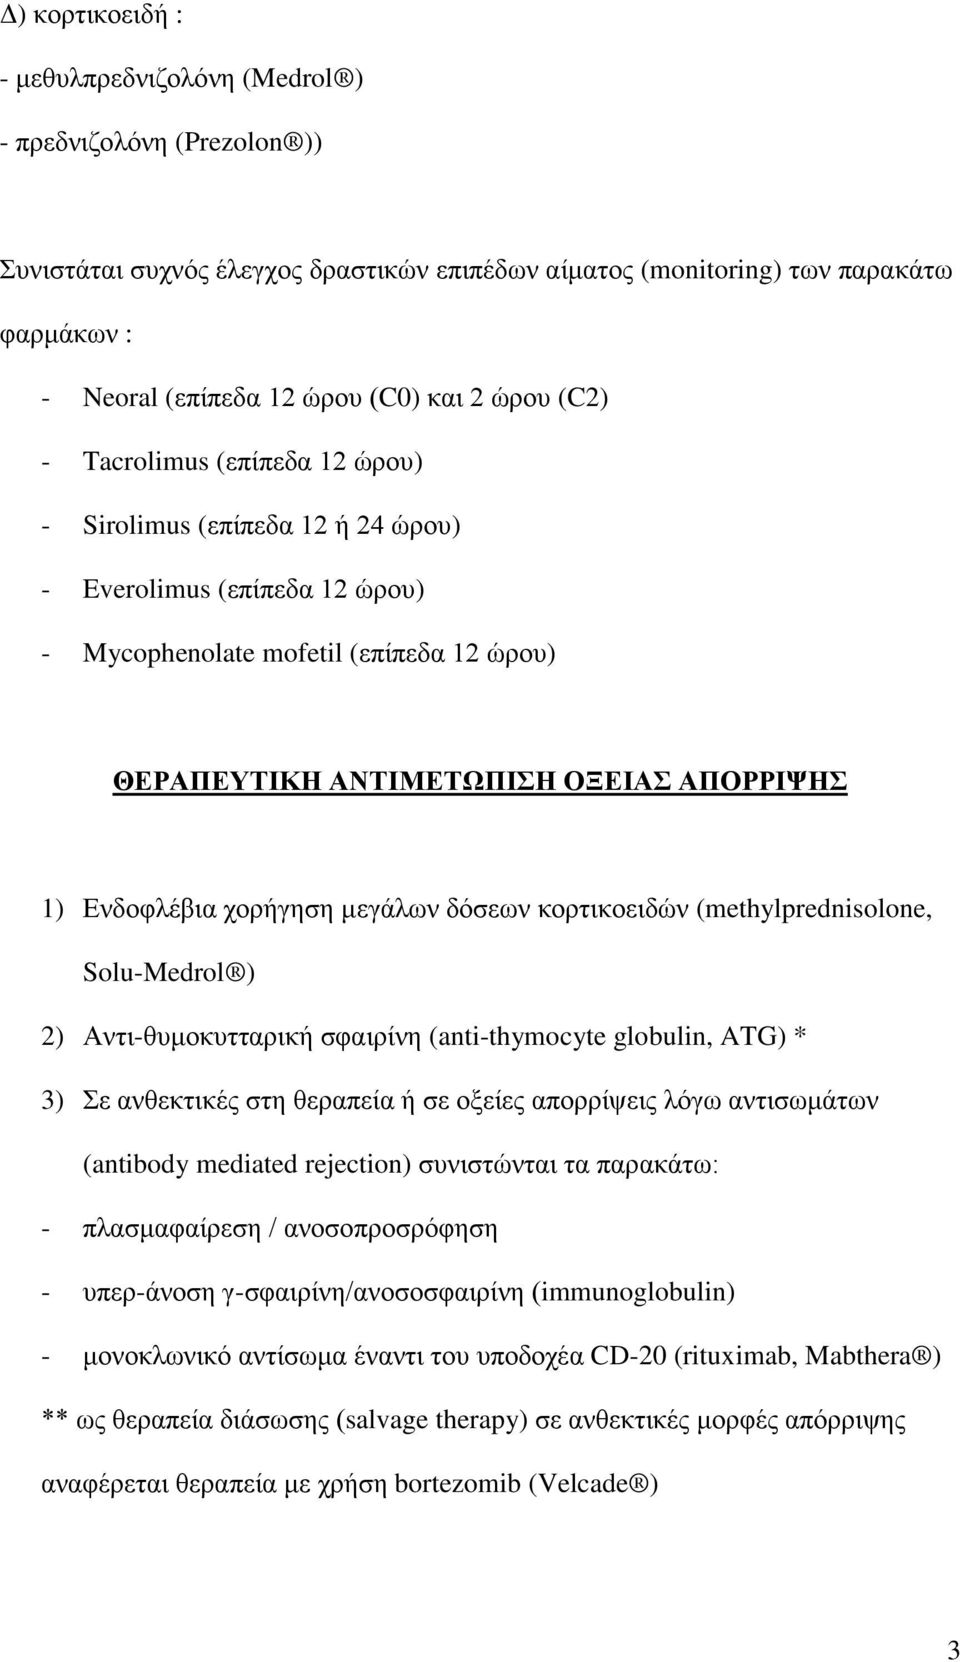 Ενδοφλέβια χορήγηση μεγάλων δόσεων κορτικοειδών (methylprednisolone, Solu-Medrol ) 2) Αντι-θυμοκυτταρική σφαιρίνη (anti-thymocyte globulin, ATG) * 3) Σε ανθεκτικές στη θεραπεία ή σε οξείες απορρίψεις